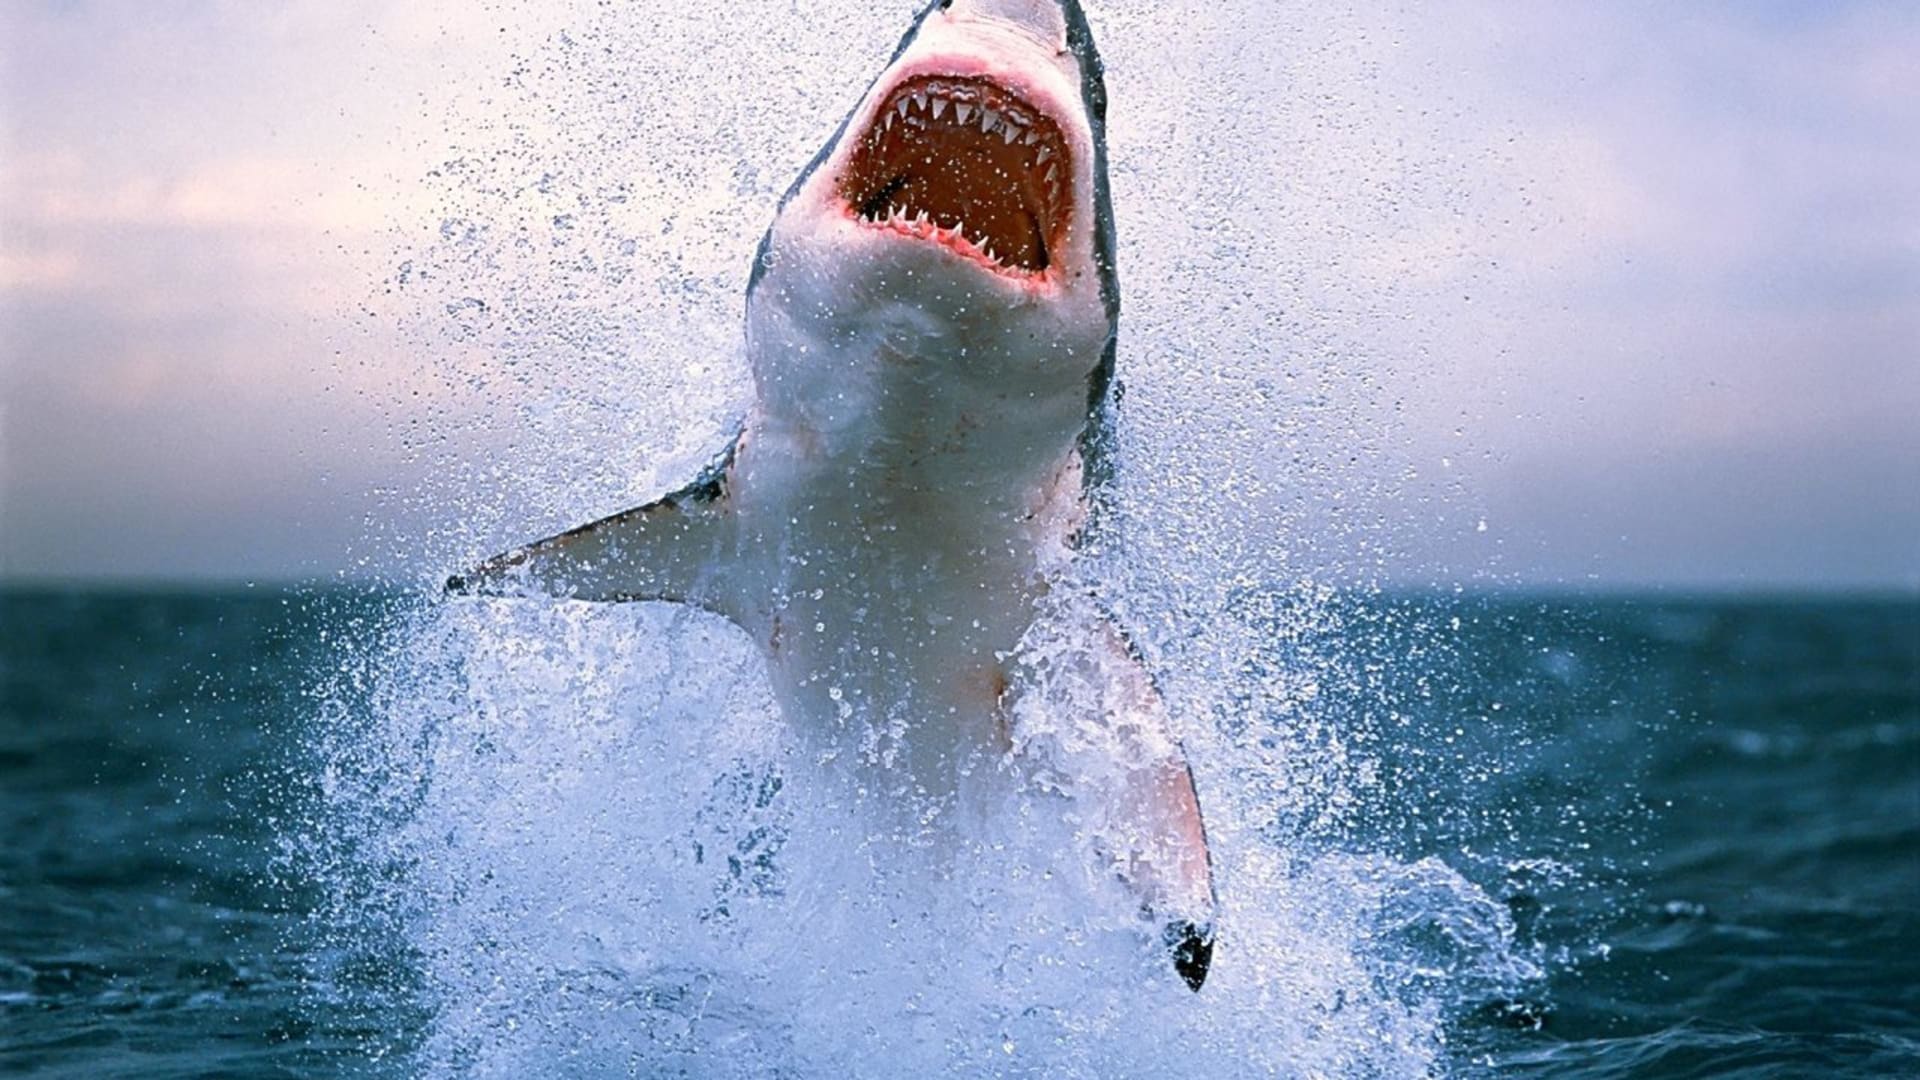 Žralok ve skoku vypadá děsivě!